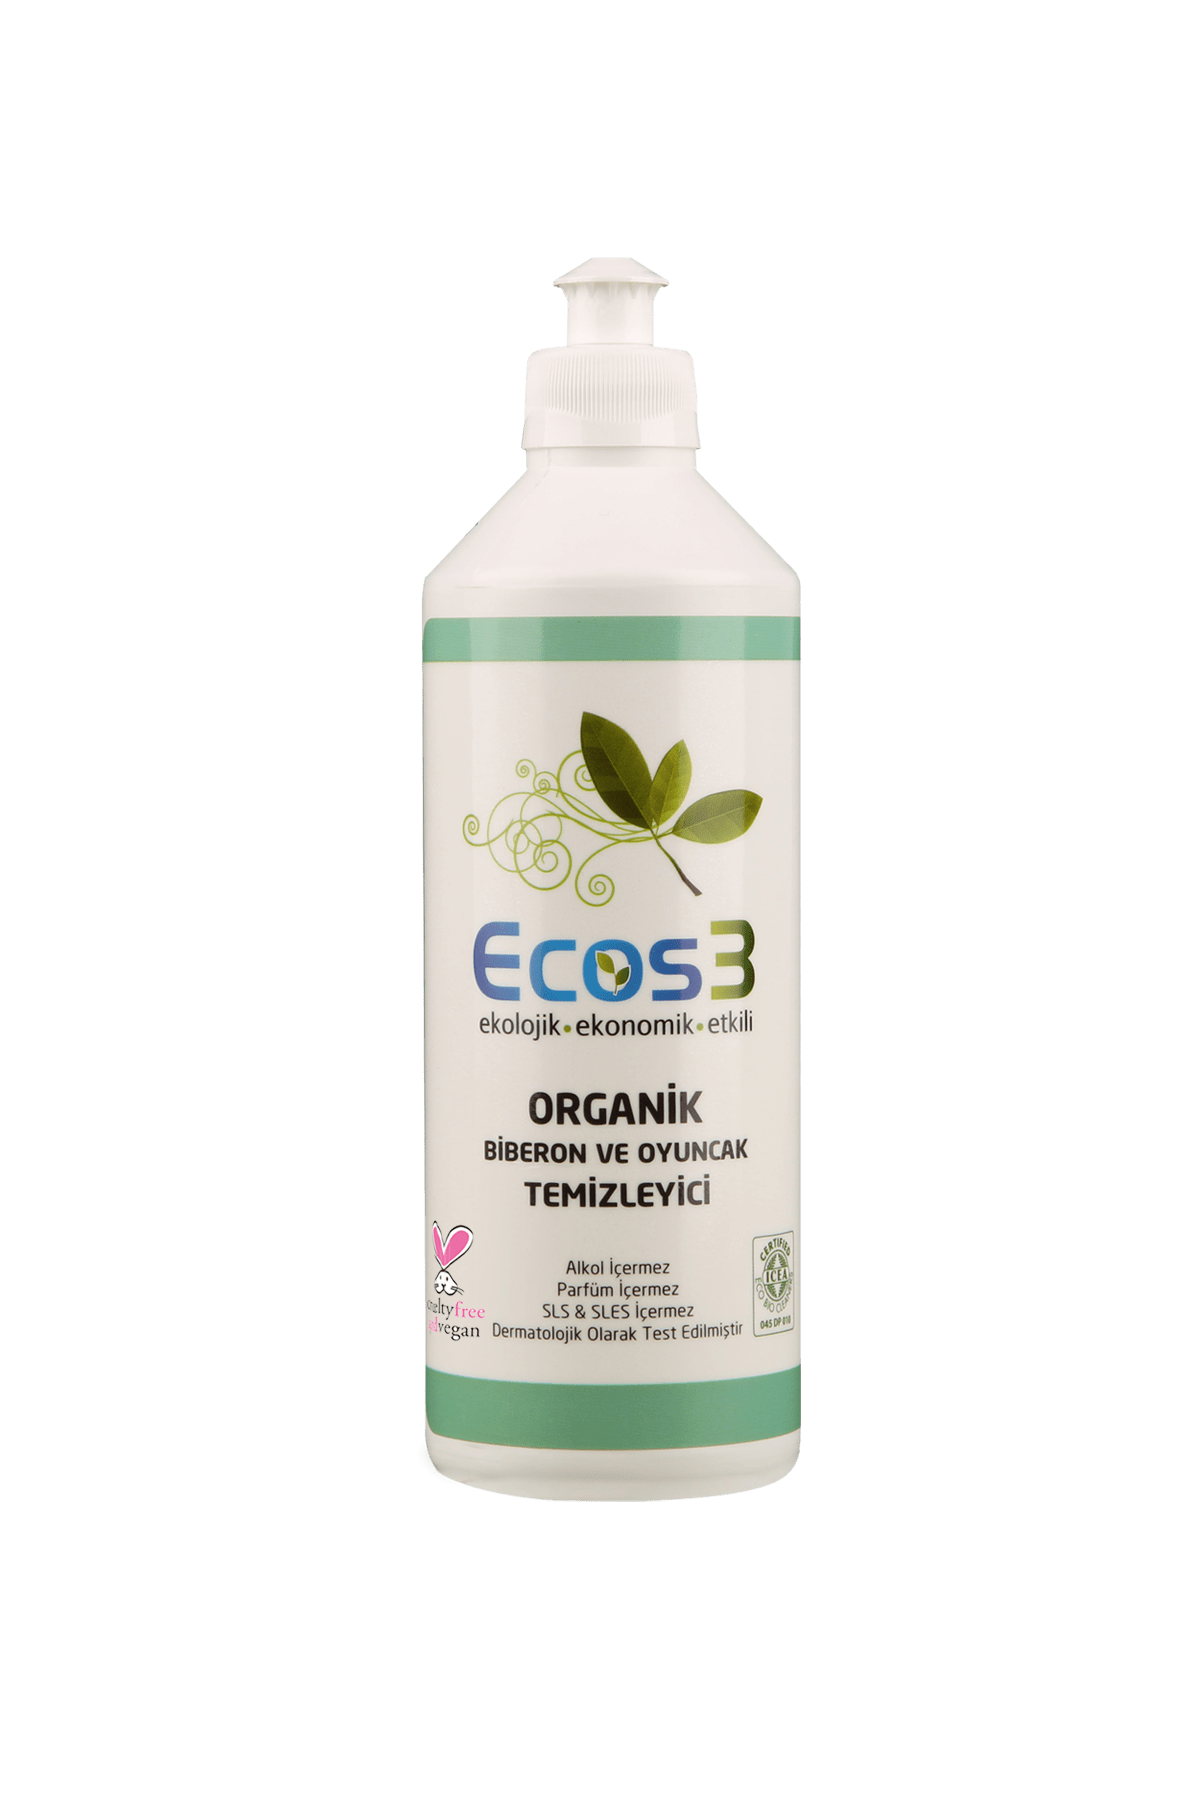 Ecos3 Organik Biberon Ve Oyuncak Temizleyici 2’li SET (2 x 500 ML)